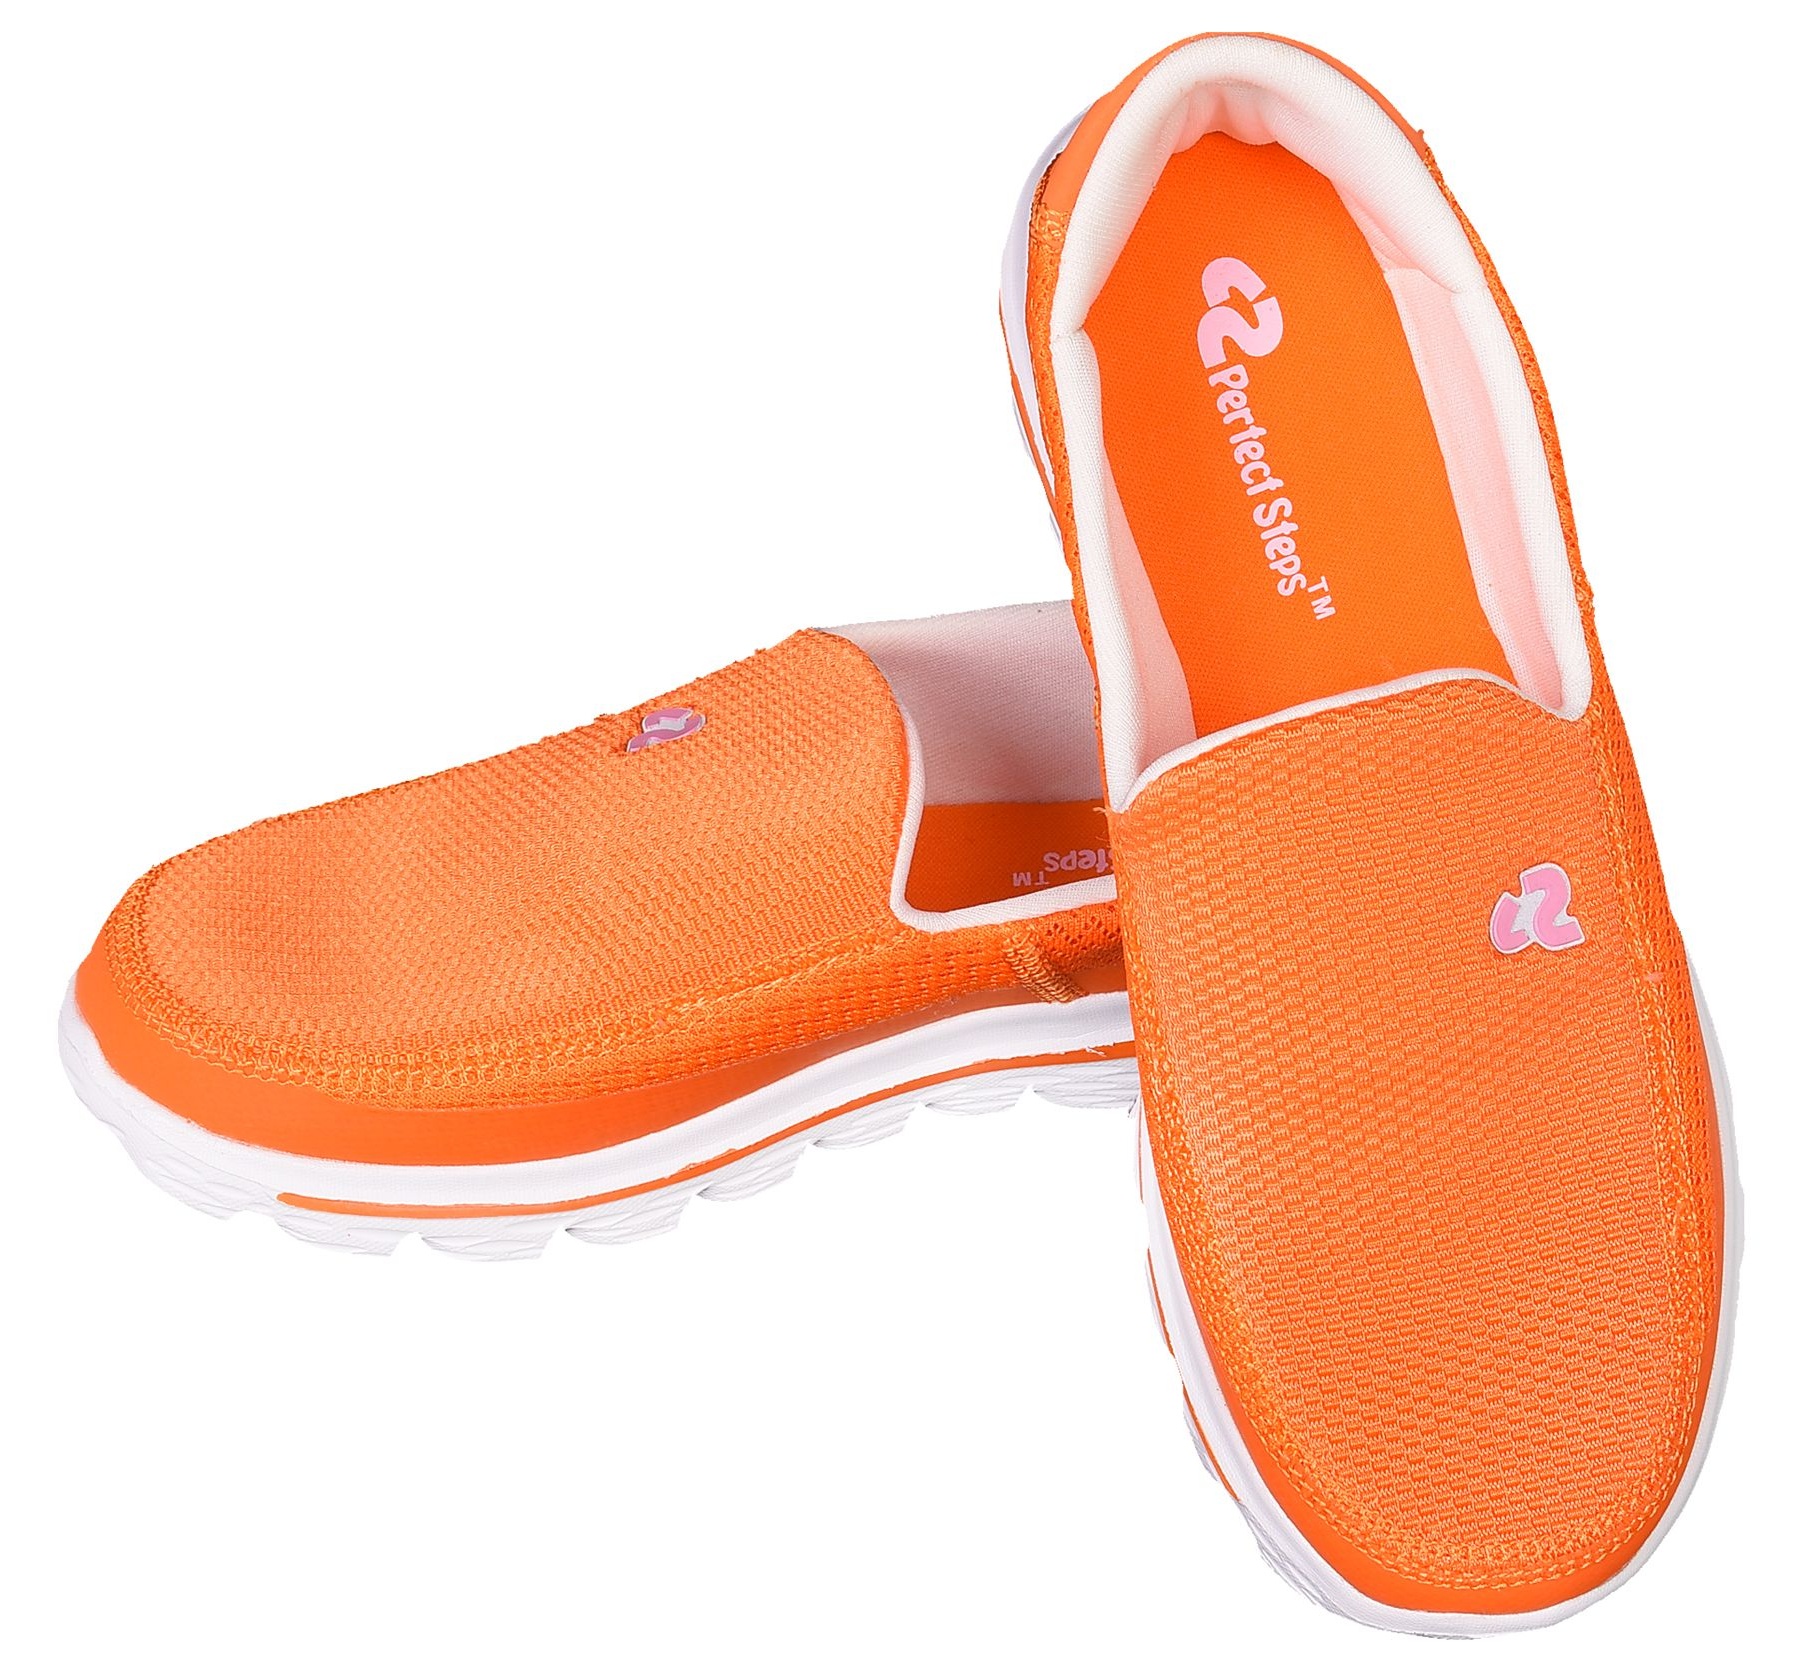 کفش مخصوص پیاده روی زنانه پرفکت استپس مدل اسکای کد 2970 رنگ نارنجی